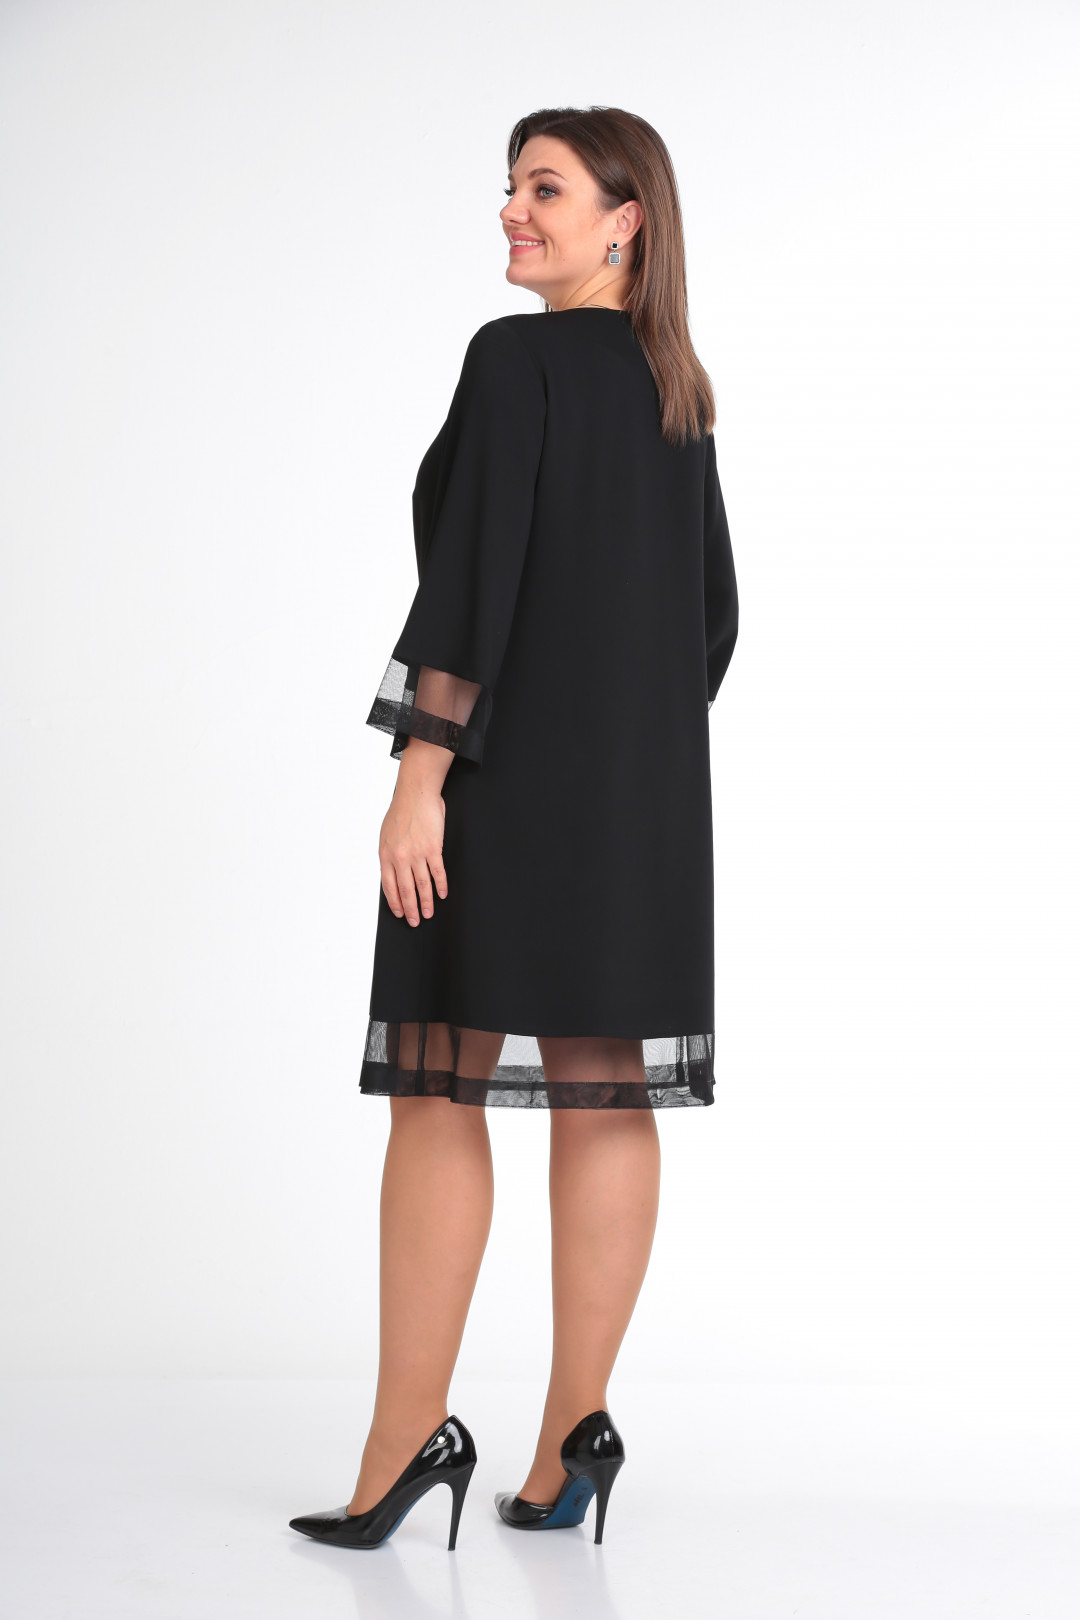 Платье Карина Делюкс В-55 черный